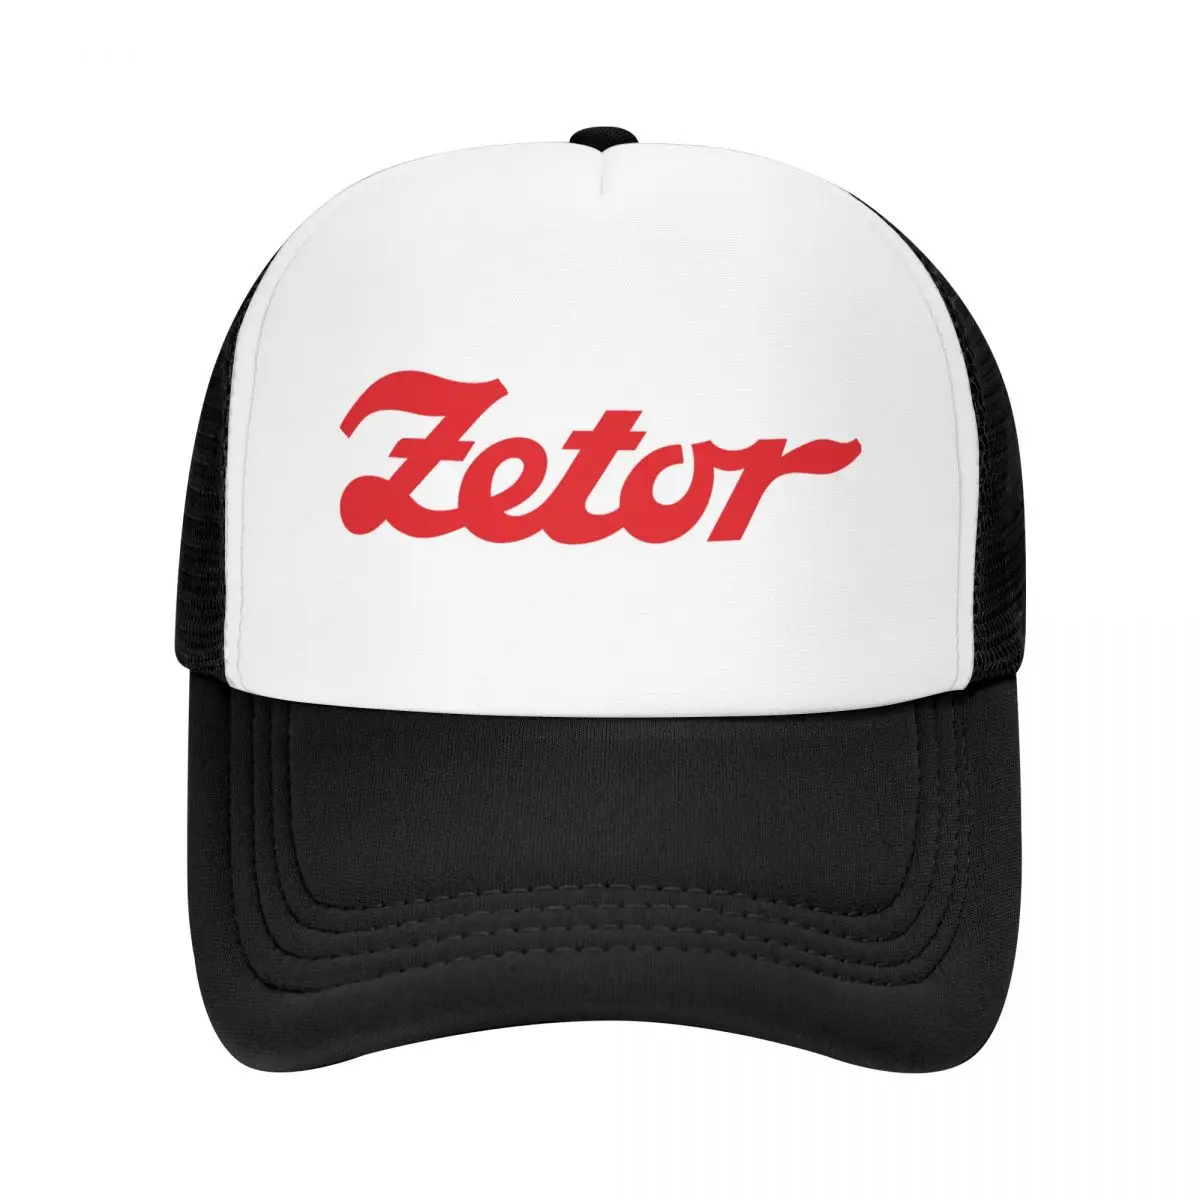 

Бейсболка Zetor с логотипом, кепка для бега, головные уборы для гольфа, мужские кепки для пиклебола, шапка для мужчин и женщин, защита от солнца